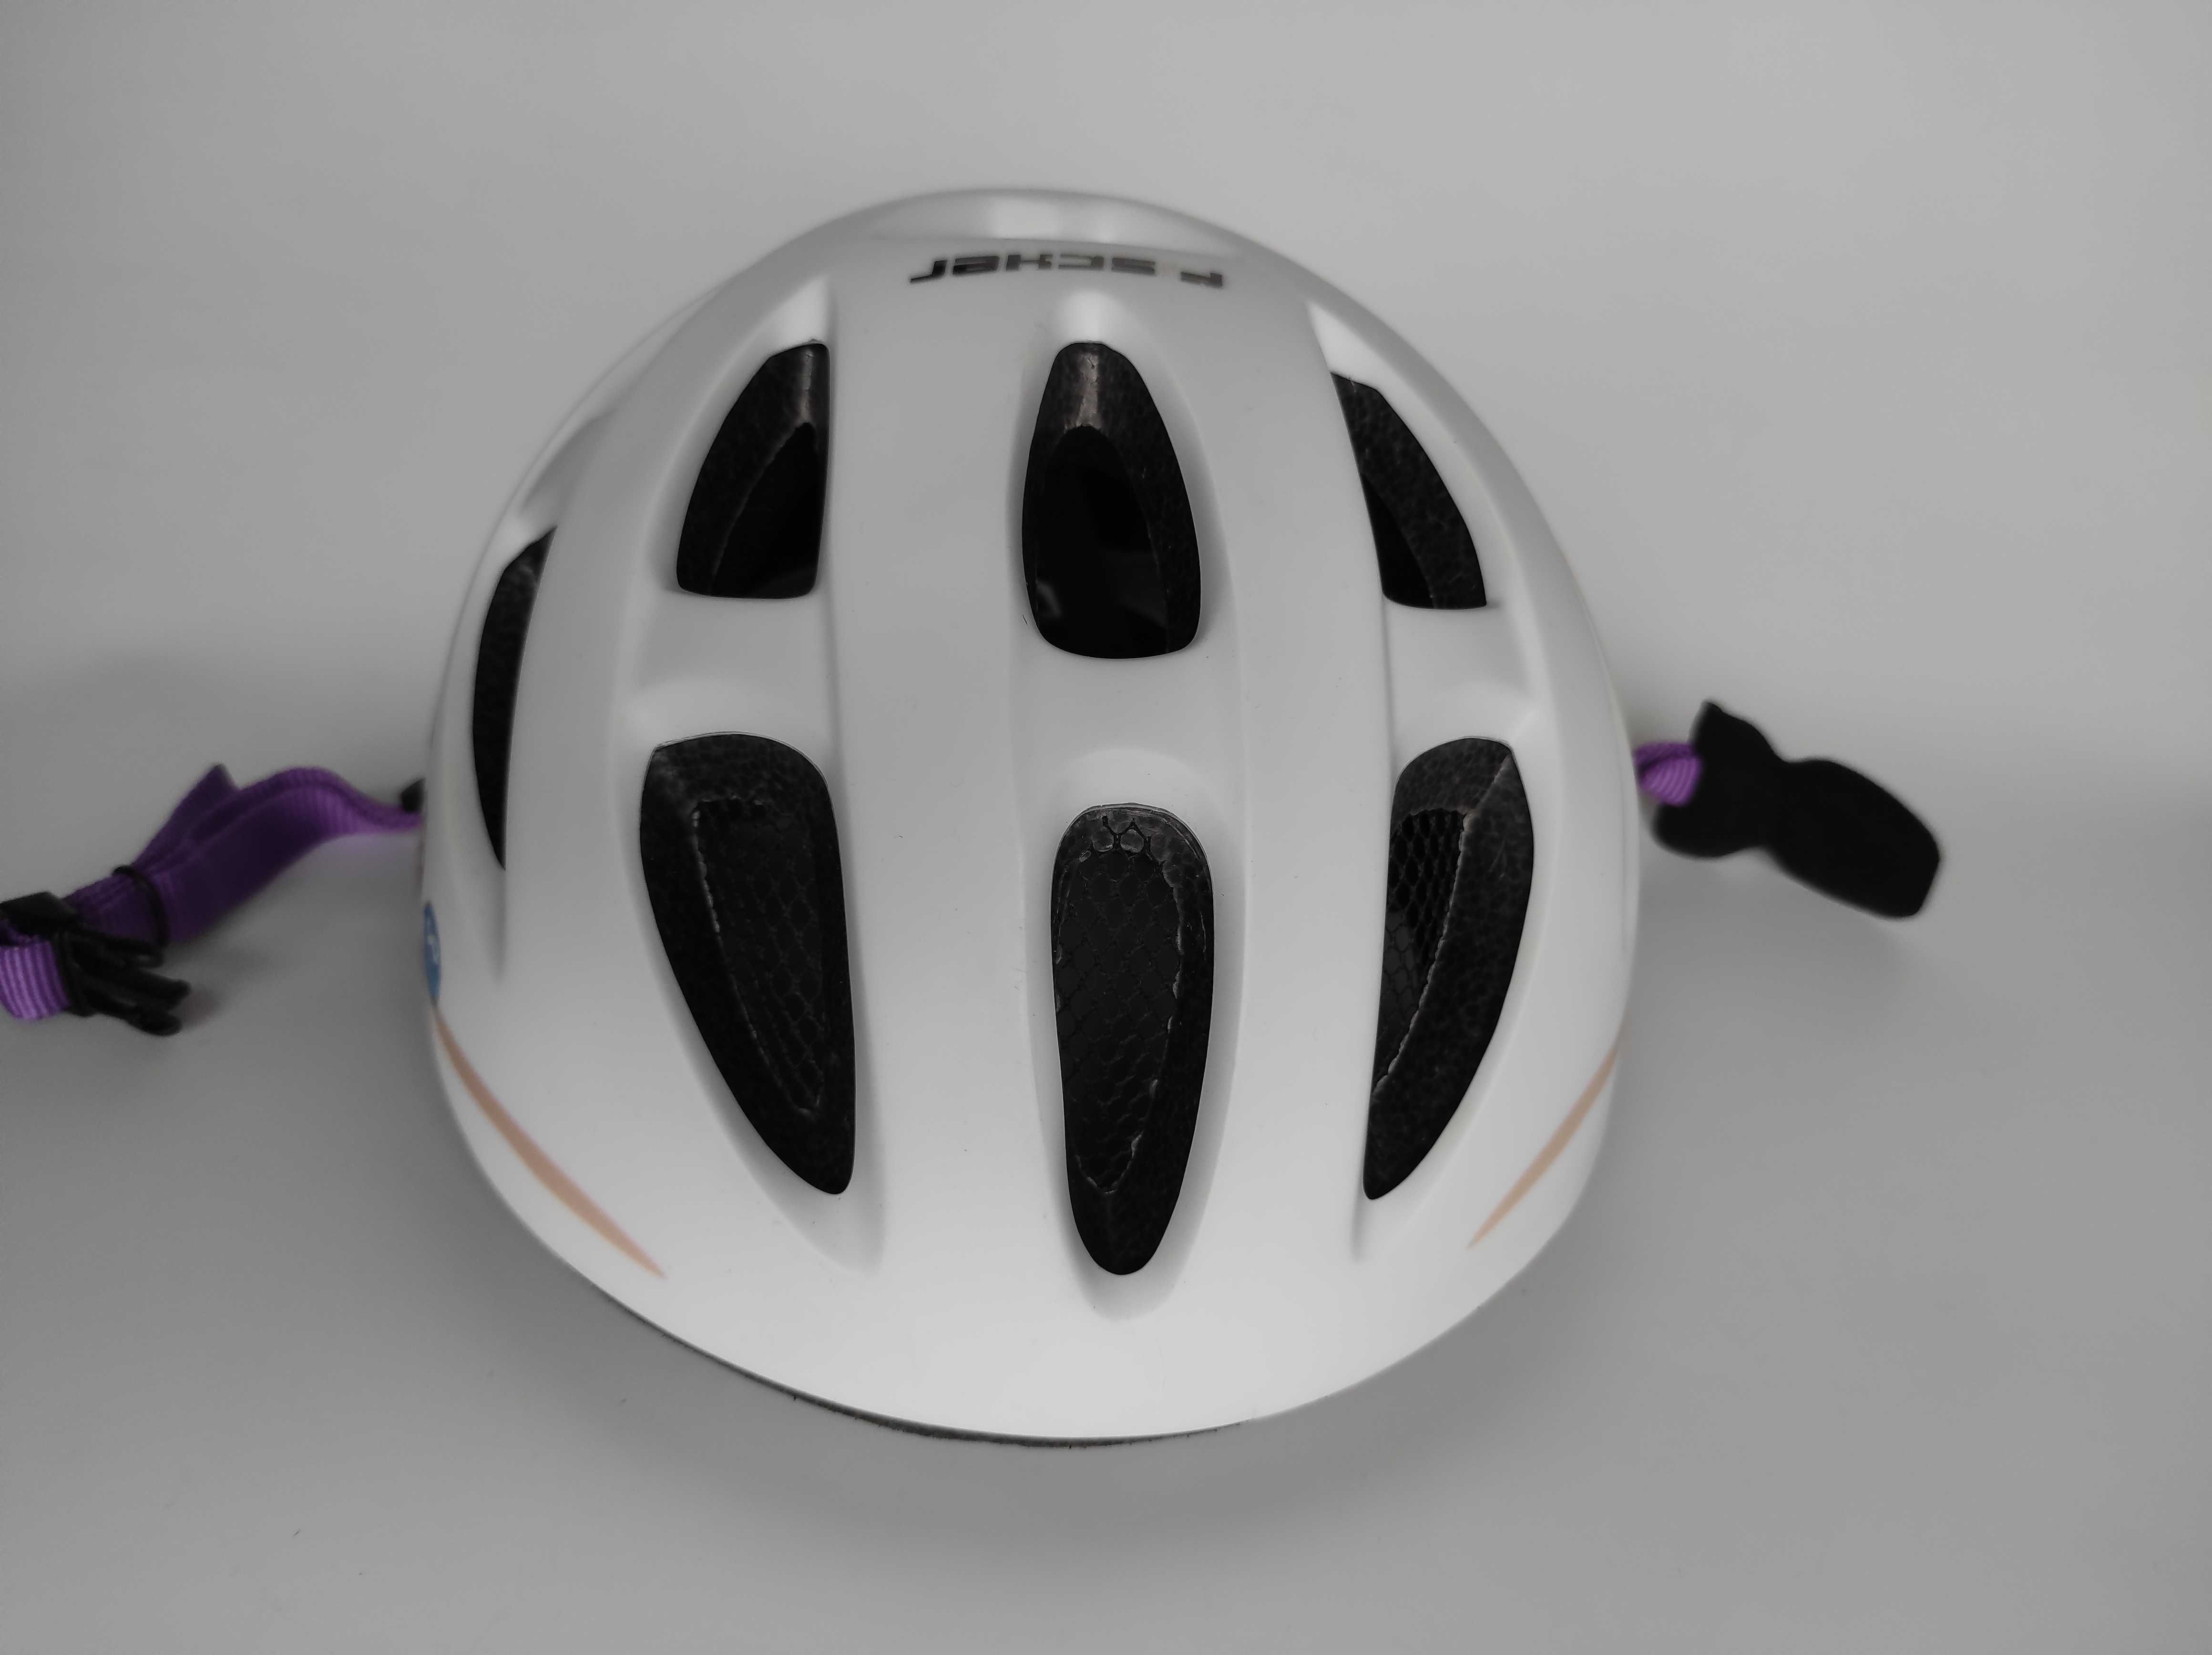 Детский защитный шлем Fischer, размер 55-59см, велосипедный, Германия.